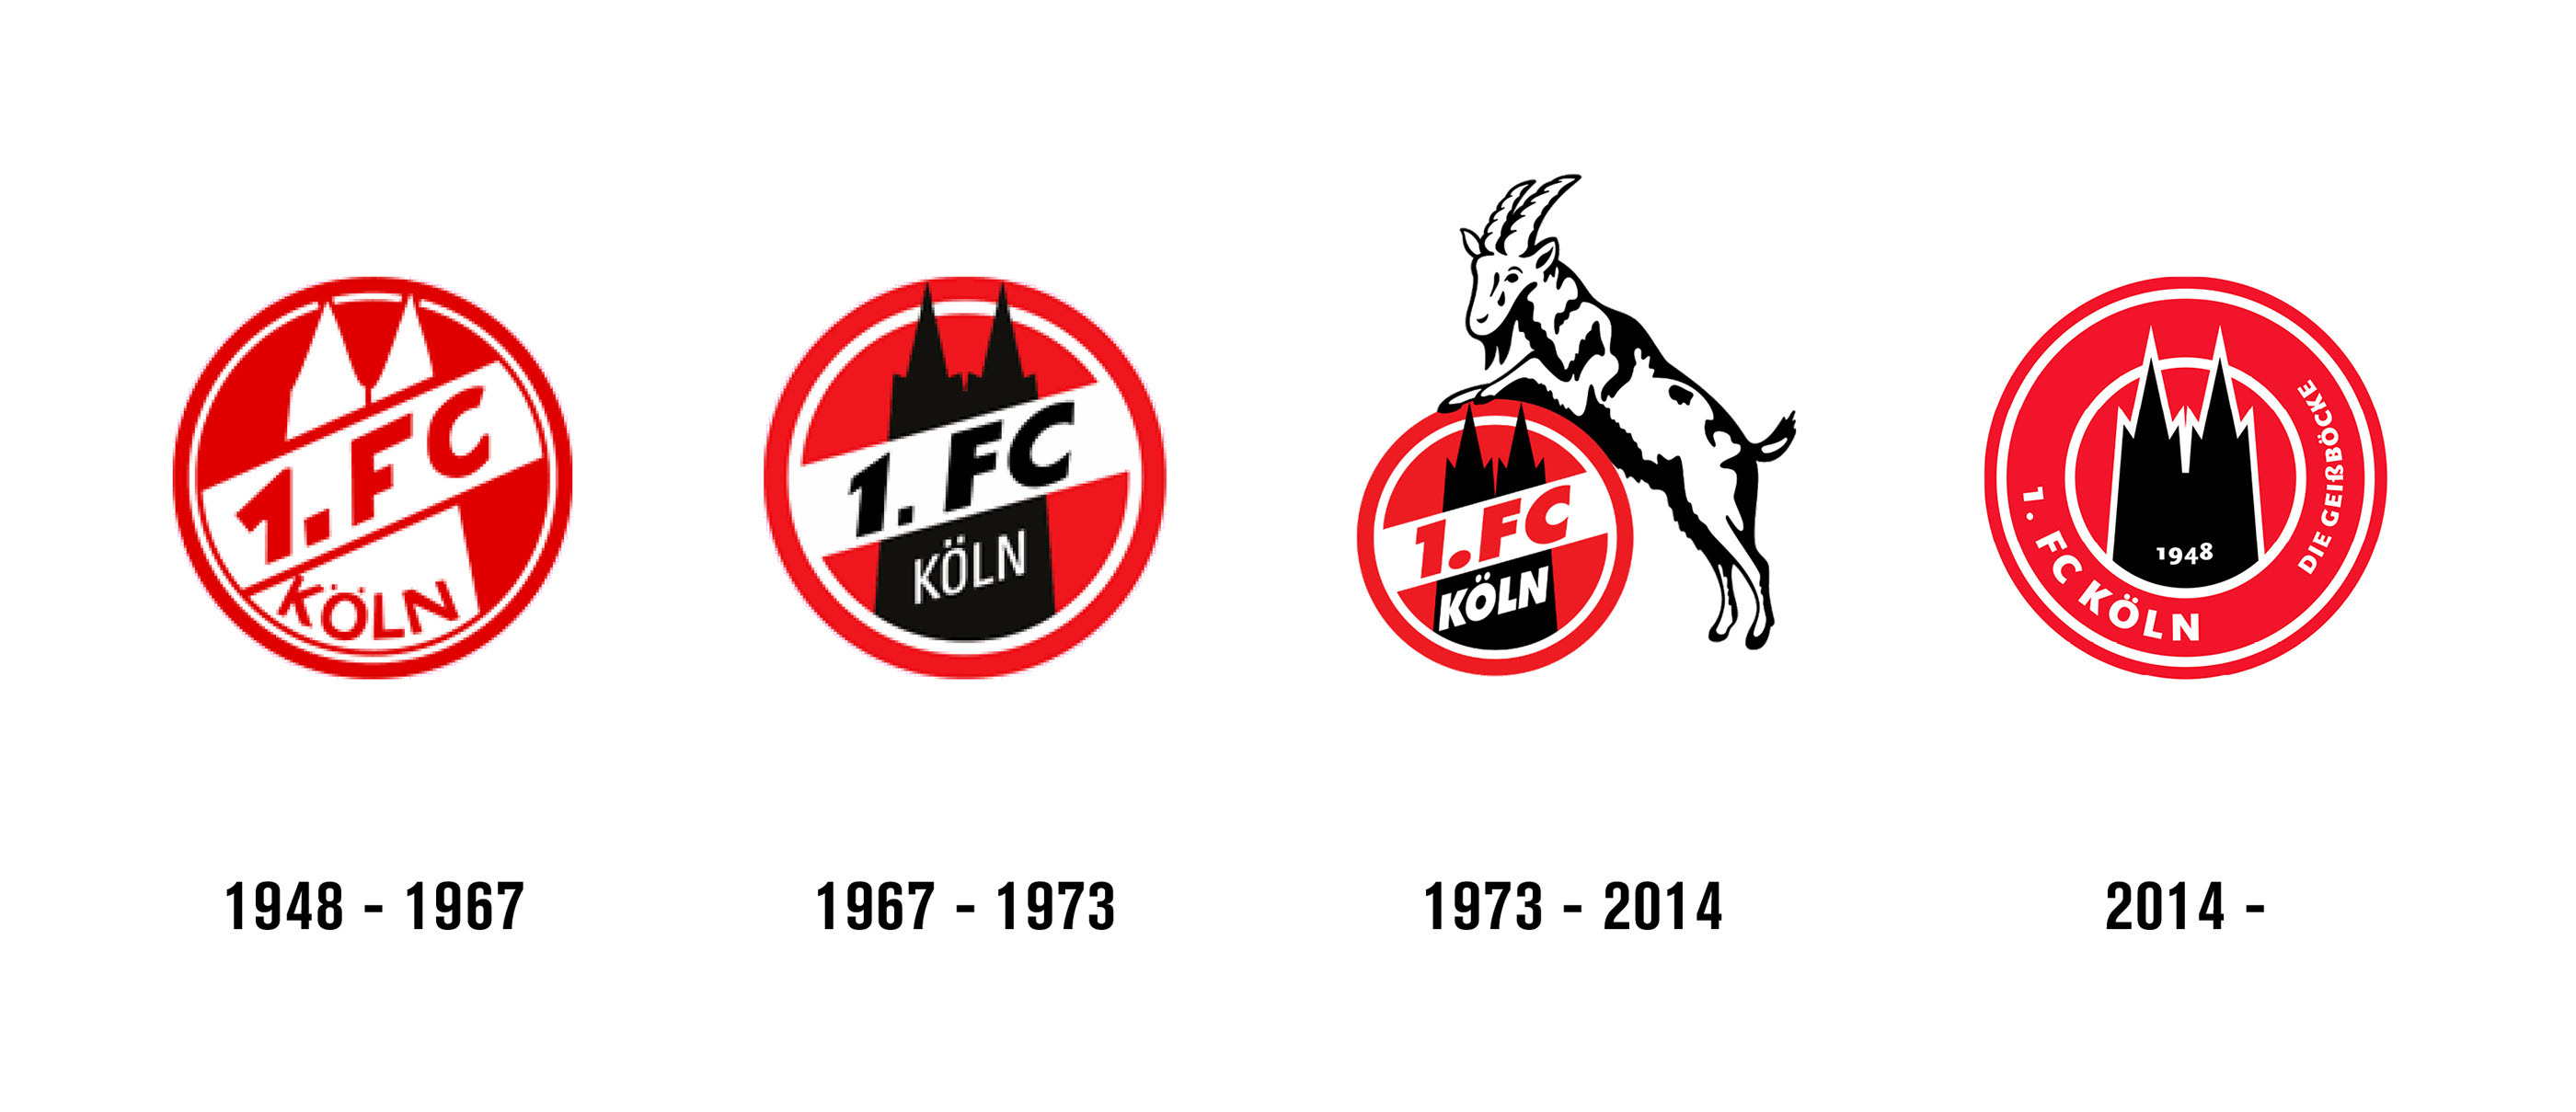 1 Fc Koln Logo Redesign On Behance